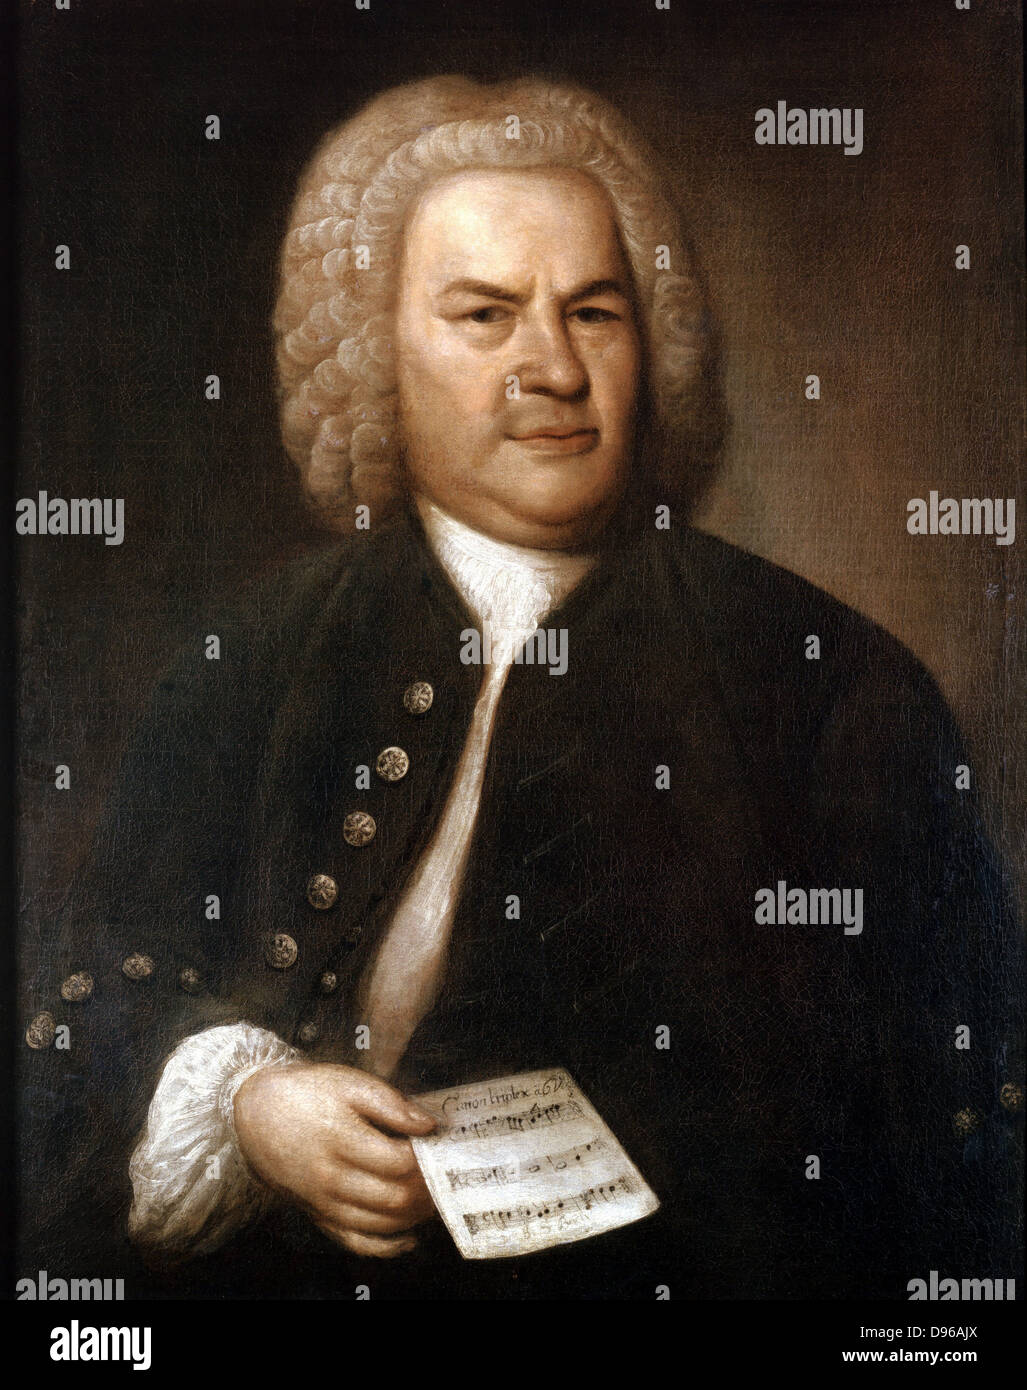 Johann Sebastian Bach (1685-1750) im Jahre 1746. Deutsche Komponist und Organist. Portrait von Elias Gottlob Haussmann. Stadtgeschichtlichen Museum, Leipzig Stockfoto